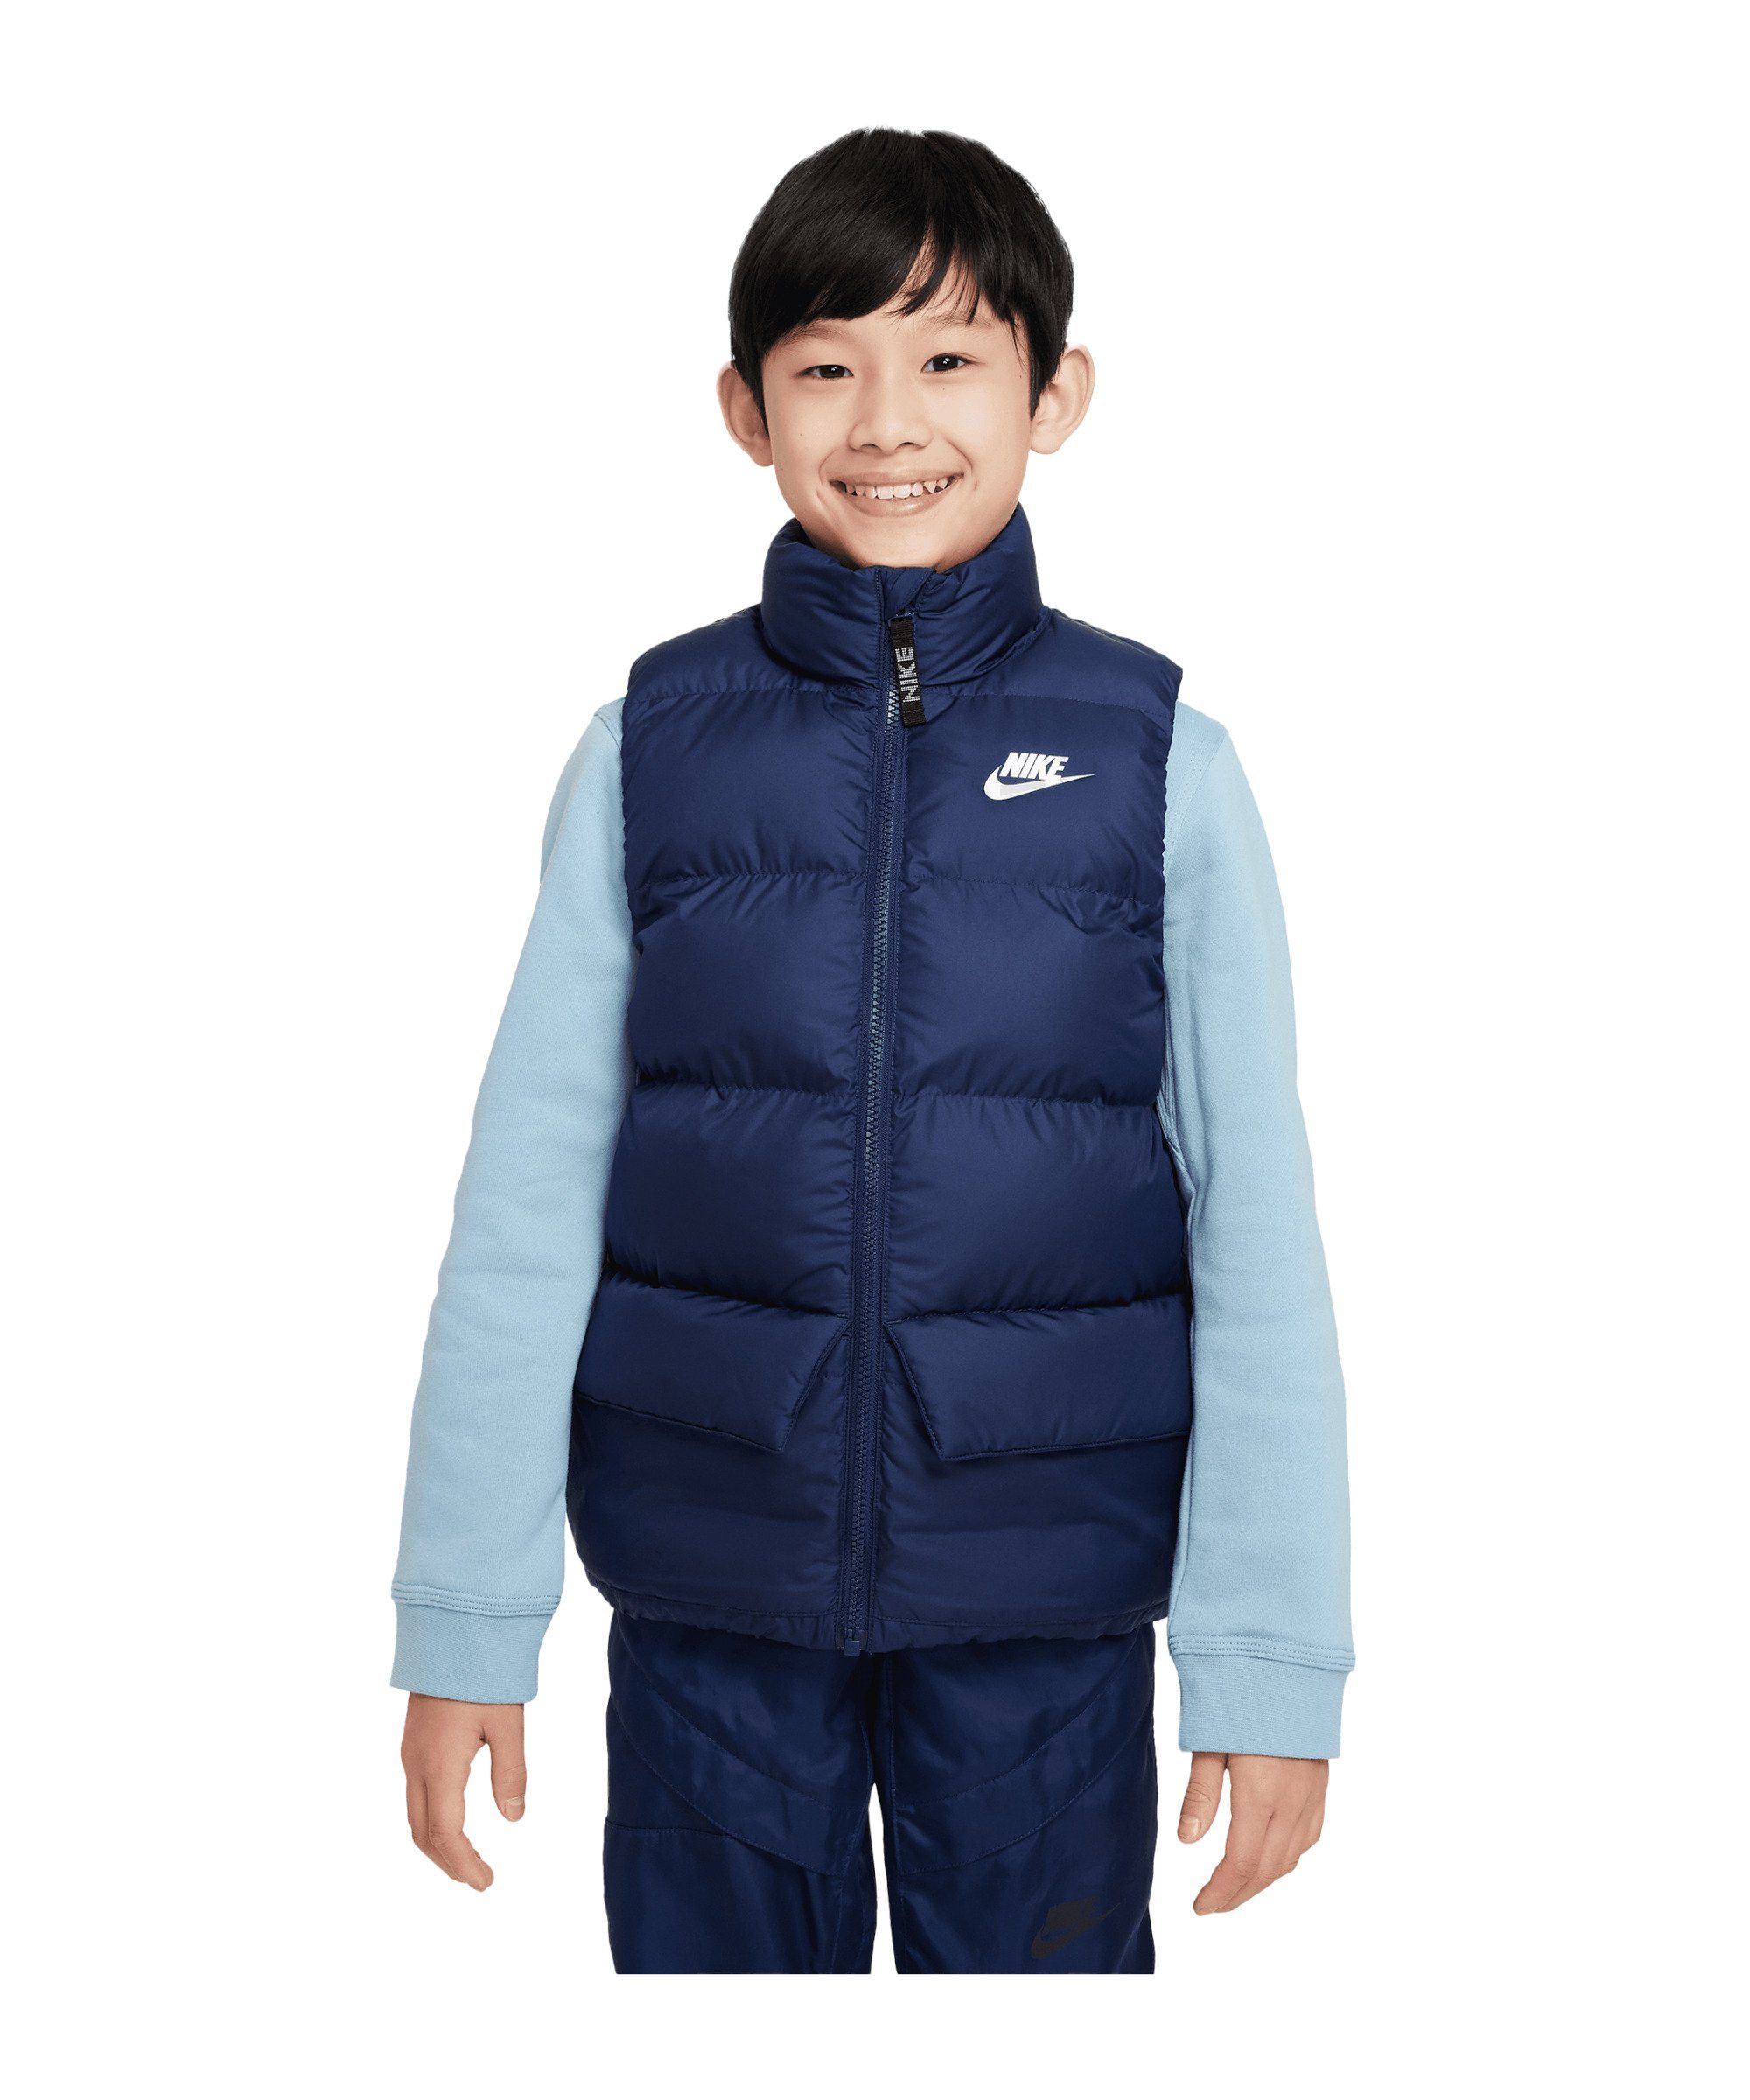 Nike Sportswear Sweatjacke Weste Kids online kaufen | OTTO